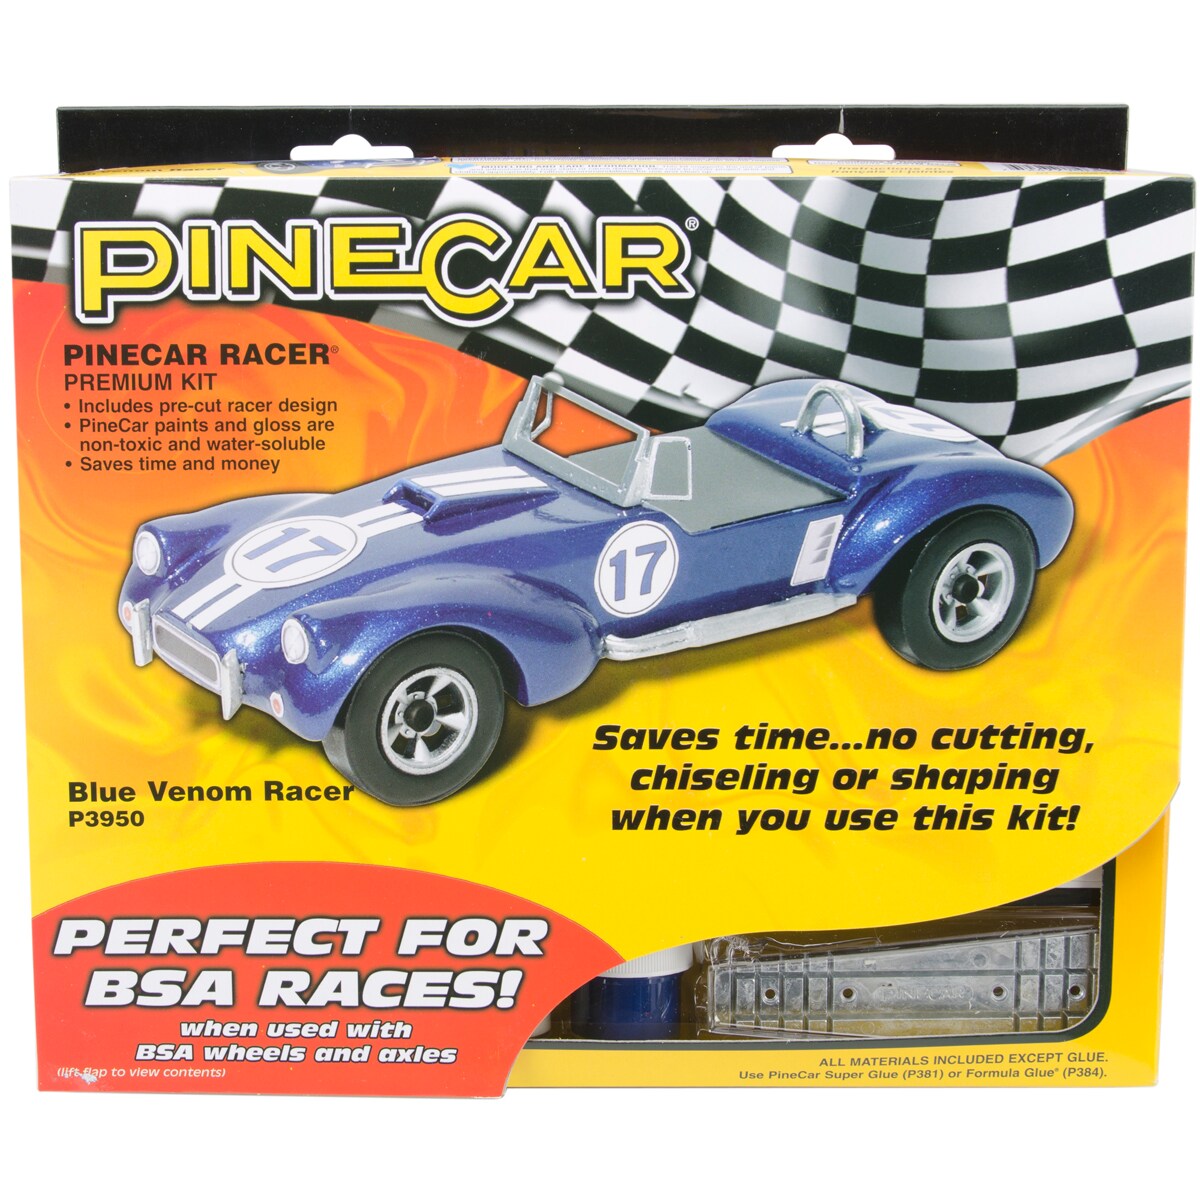 Pinecar Premium Car Kit, Blue Venom Racer